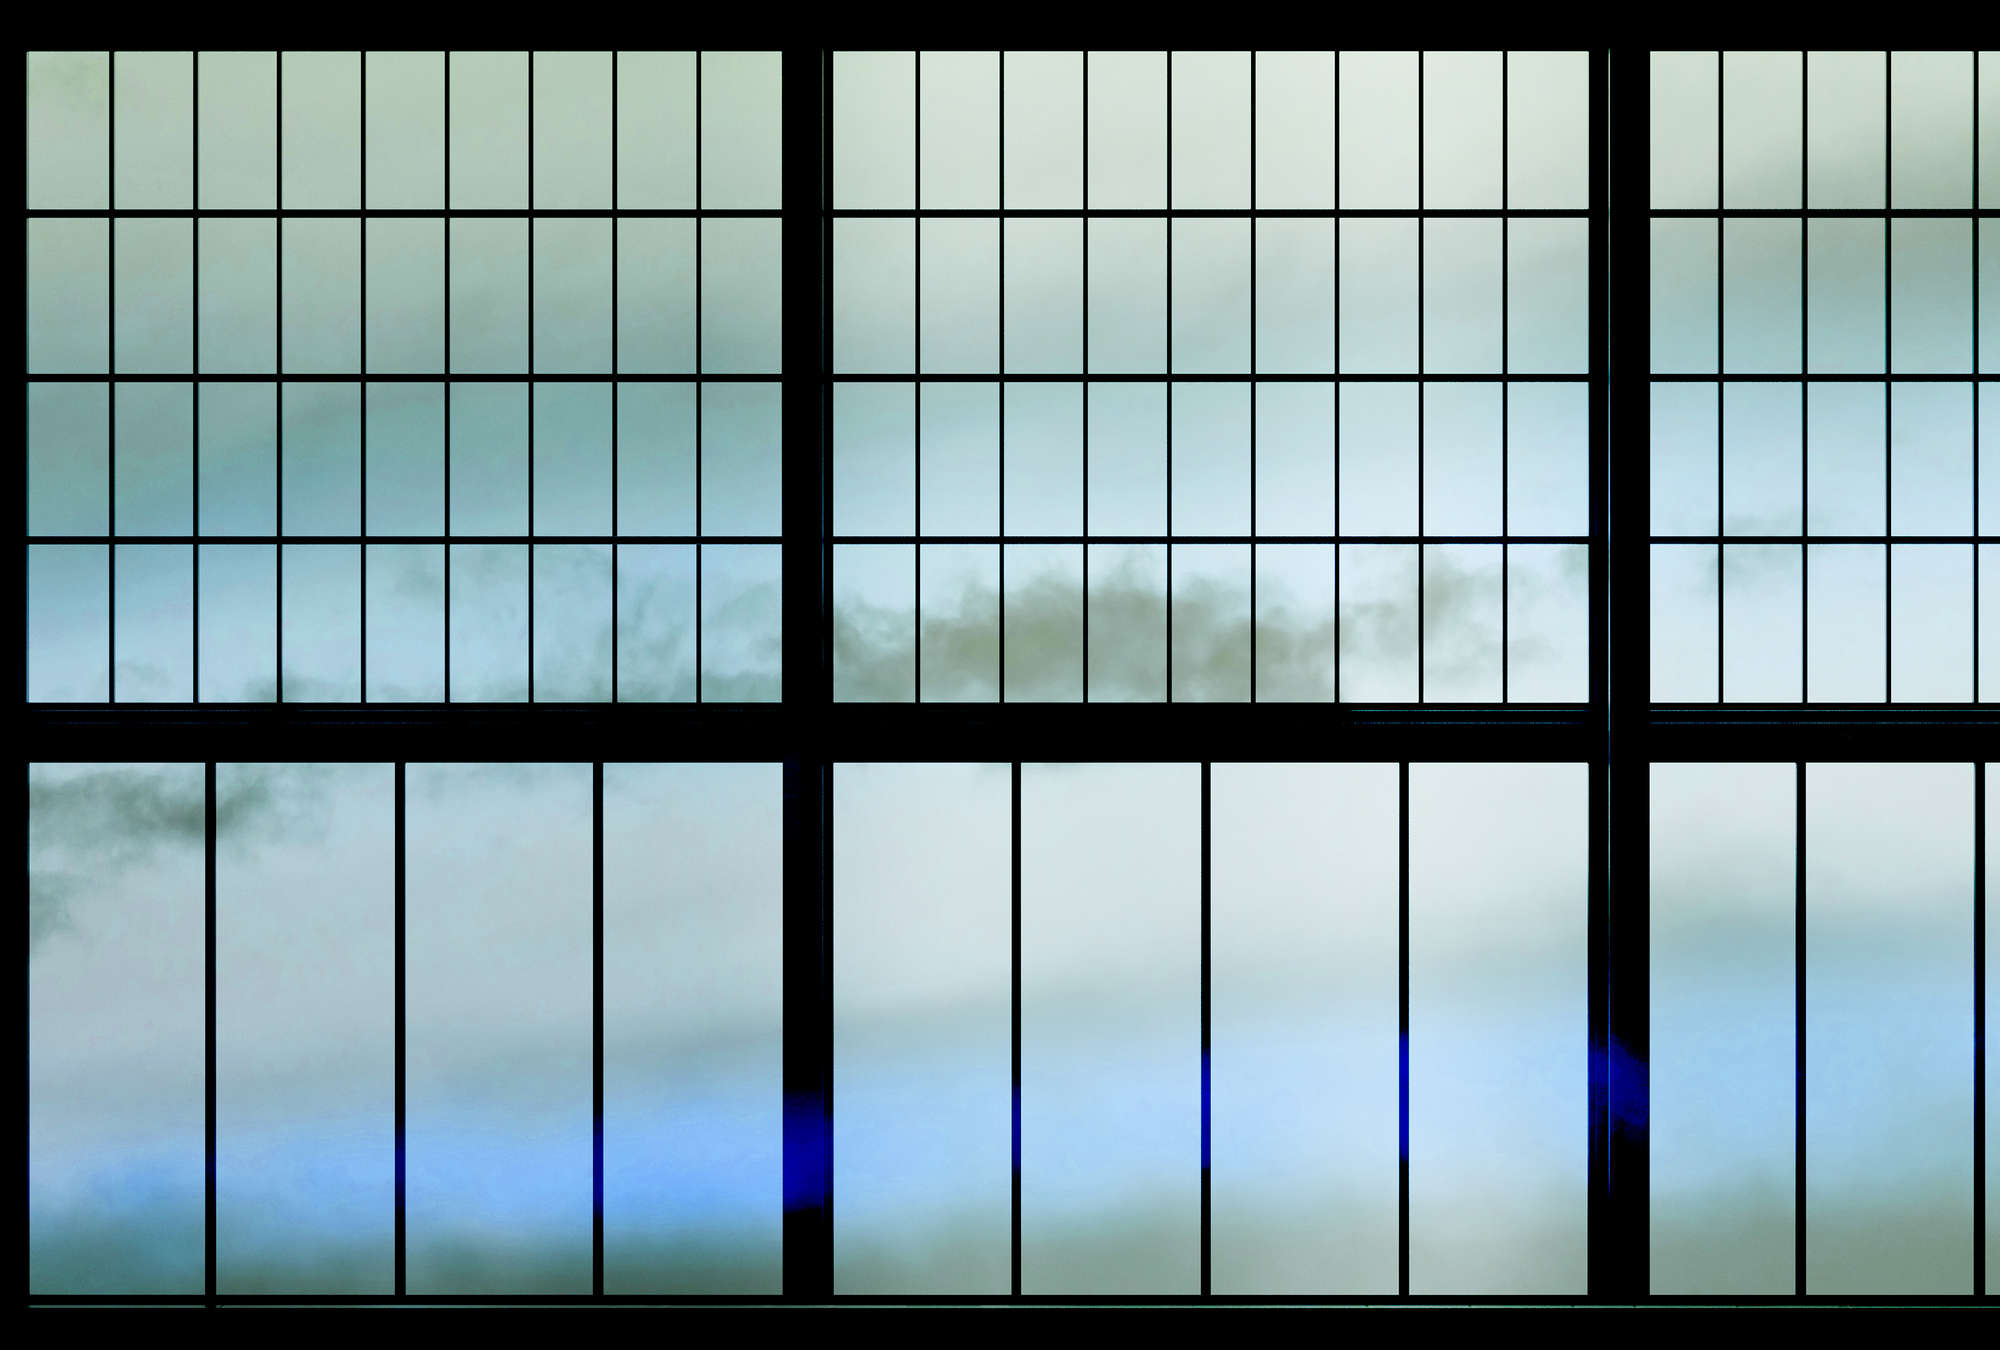             Sky 3 - Finestra Muntin con carta da parati cielo nuvoloso - Blu, nero | Perla liscia in pile
        